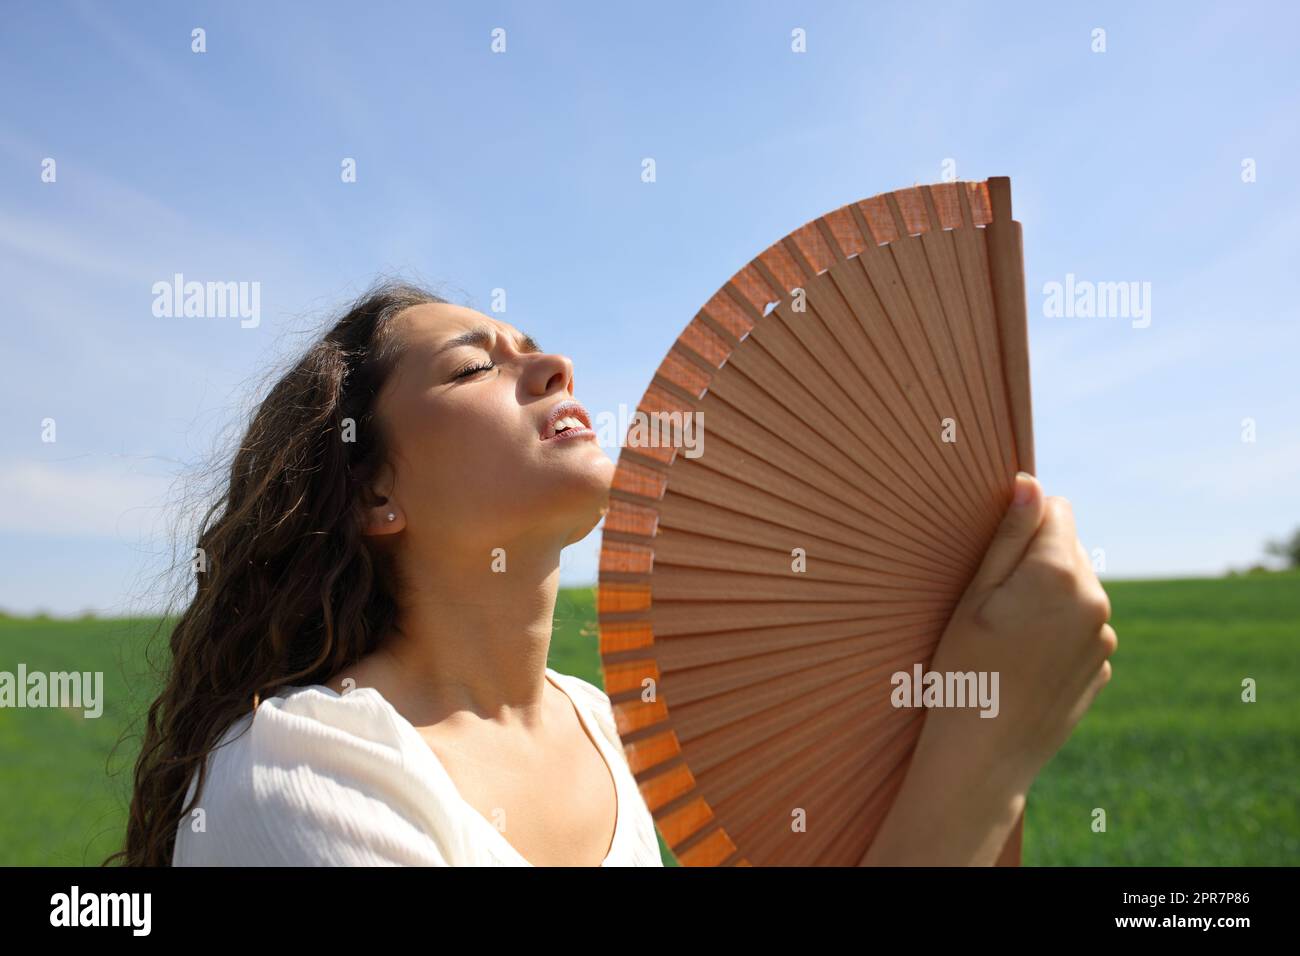 Stressed woman fanning suffering heat stroke in a field Stock Photo